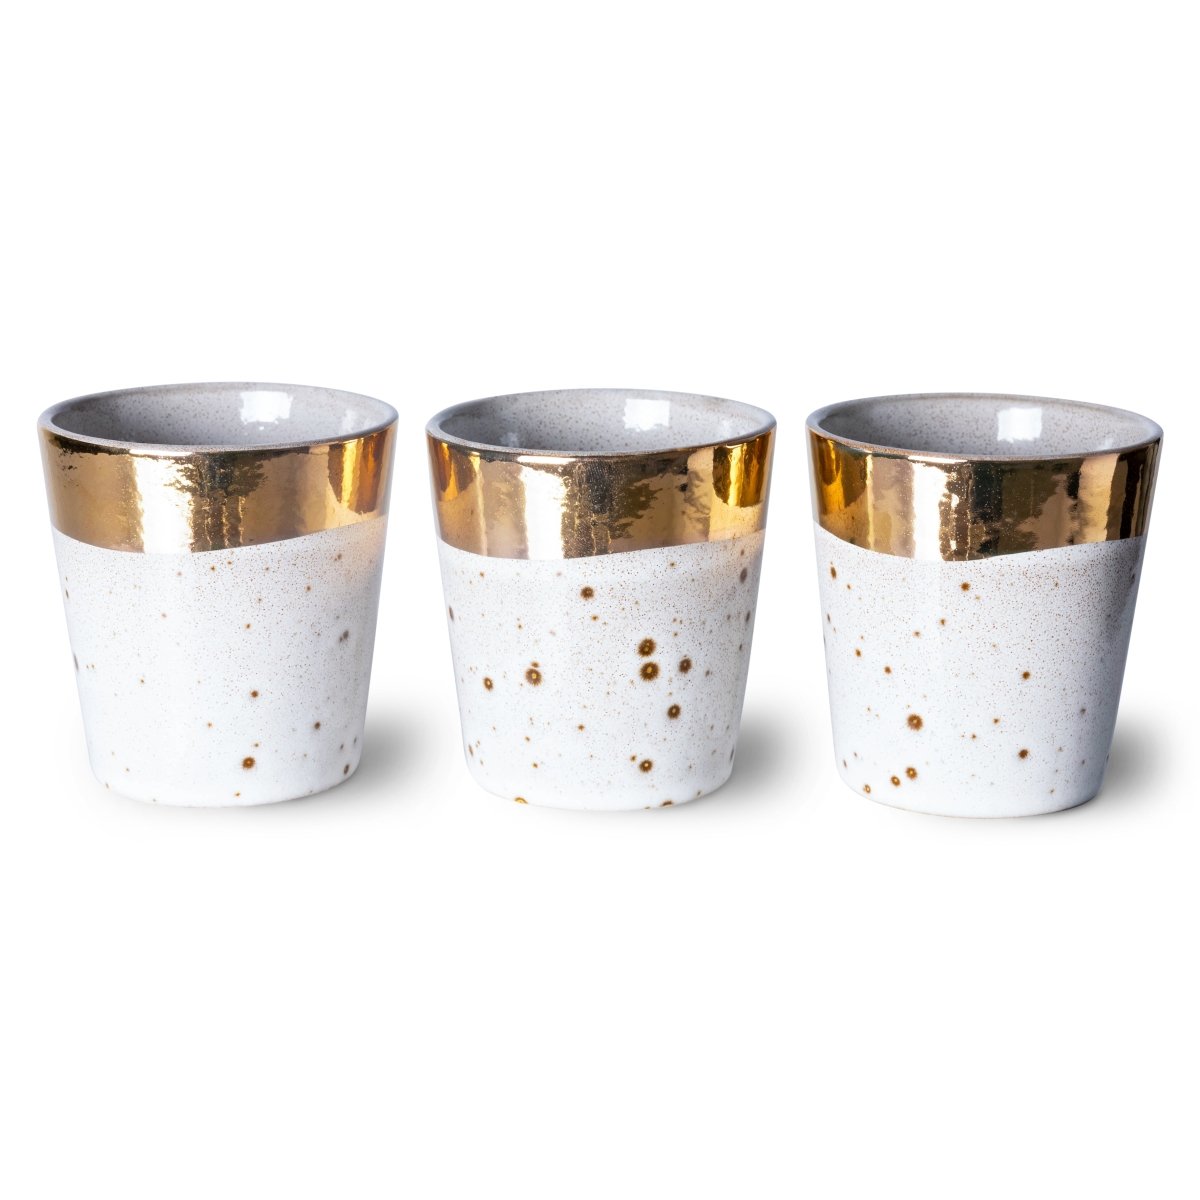 70's Ceramics Christmas Special 2021 Coffee Mug 180ml Sparkle - House of Orange